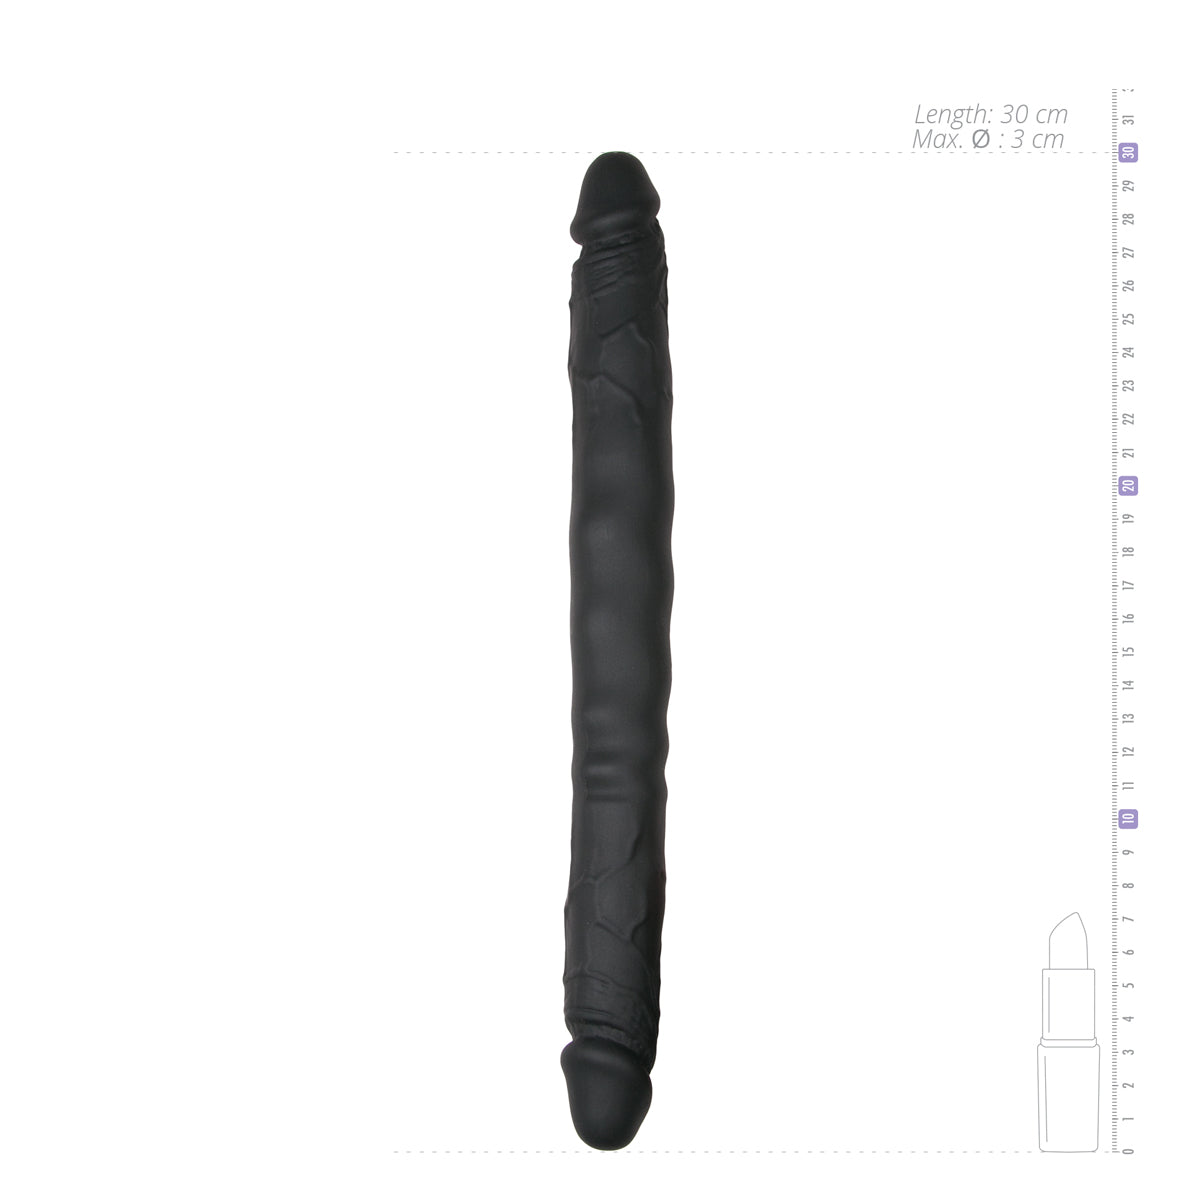 Realistische zwarte dubbele dildo van 30 cm lang. De dildo is van het merk EasyToys en te koop bij Flavourez